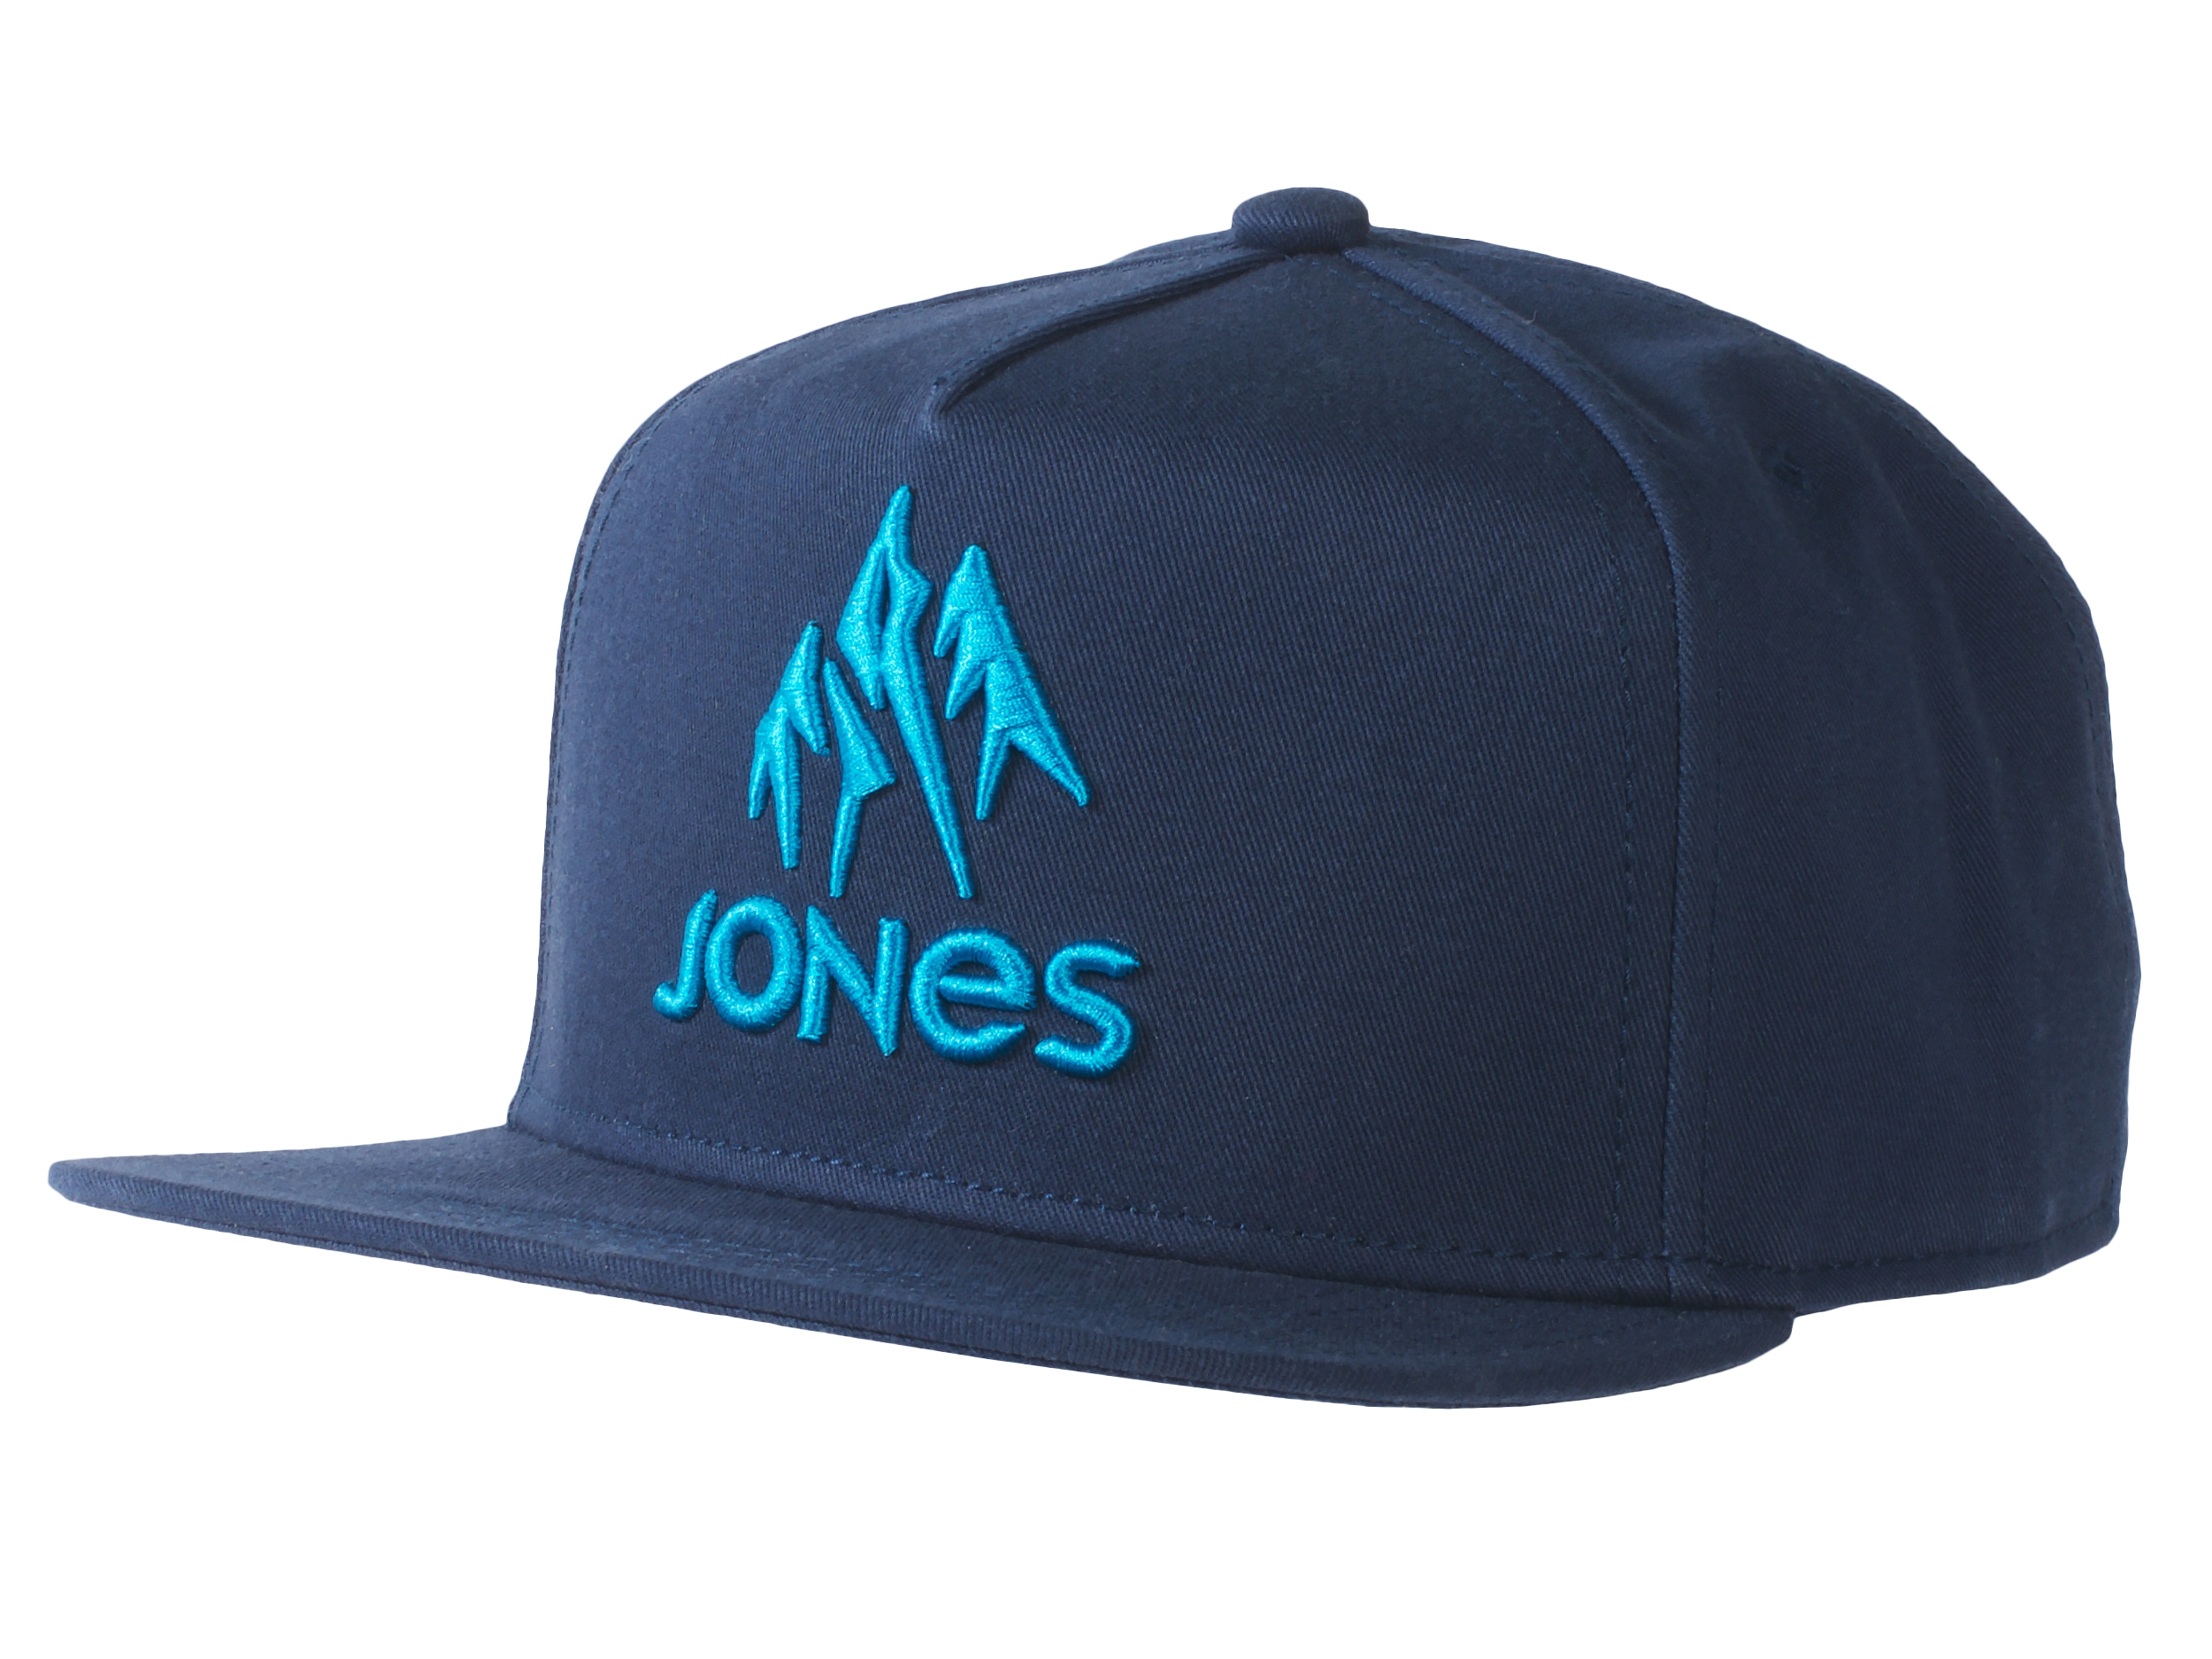 5. Jones Jackson Cap Navy